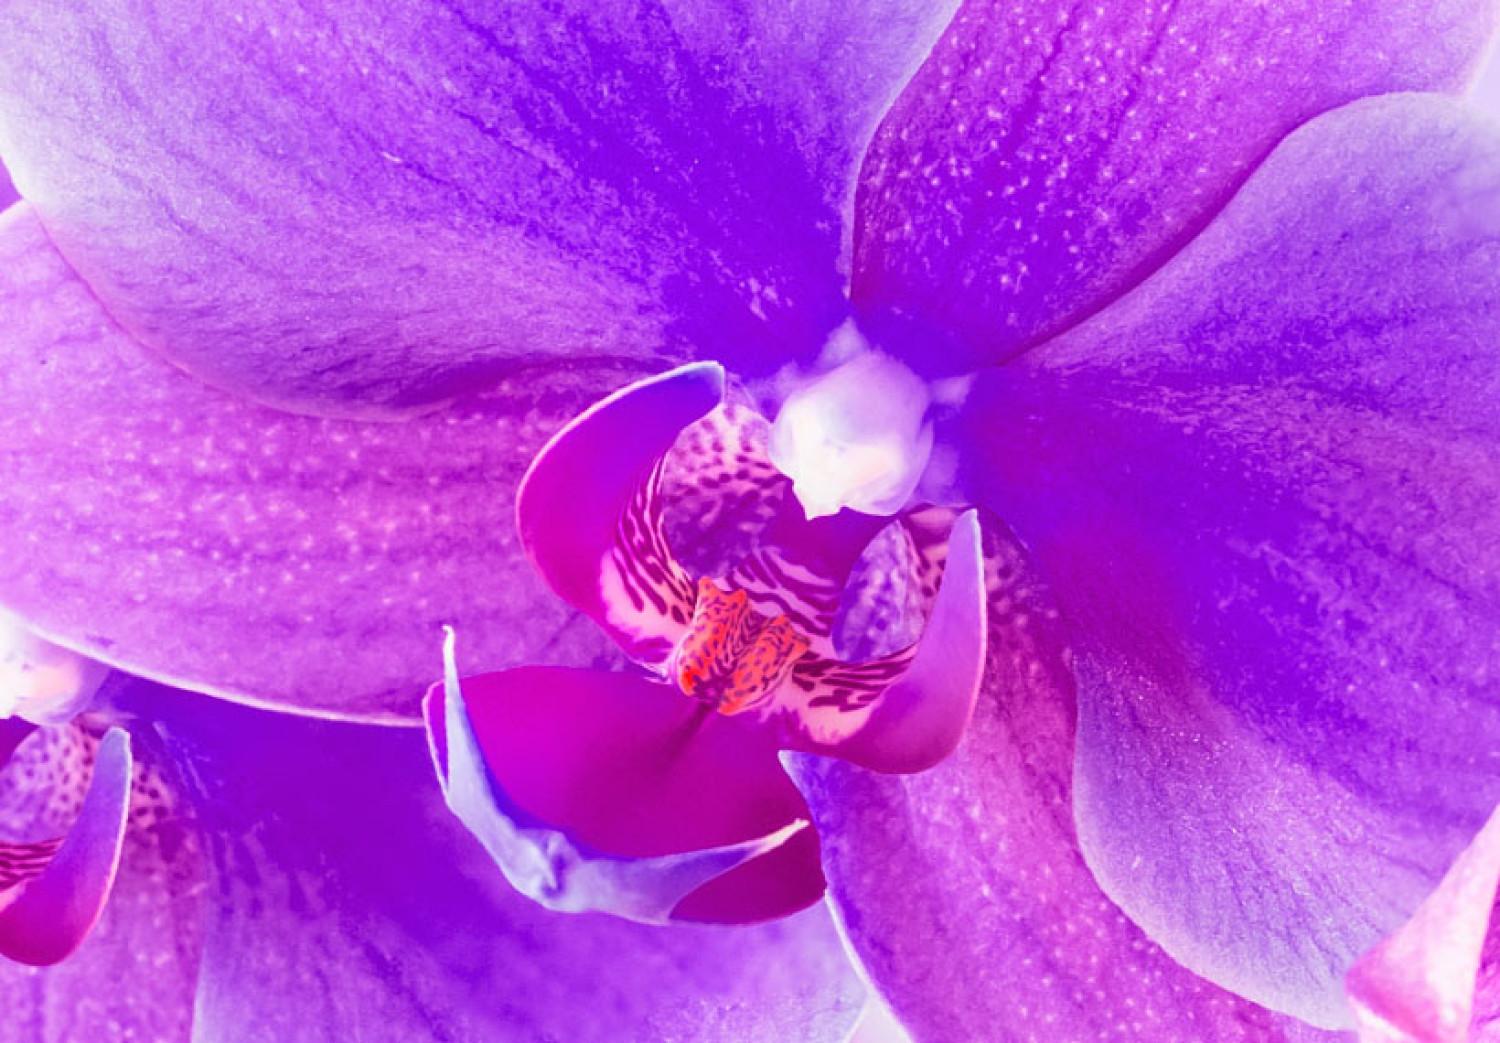 Cuadro Orquídea sutil - violeta